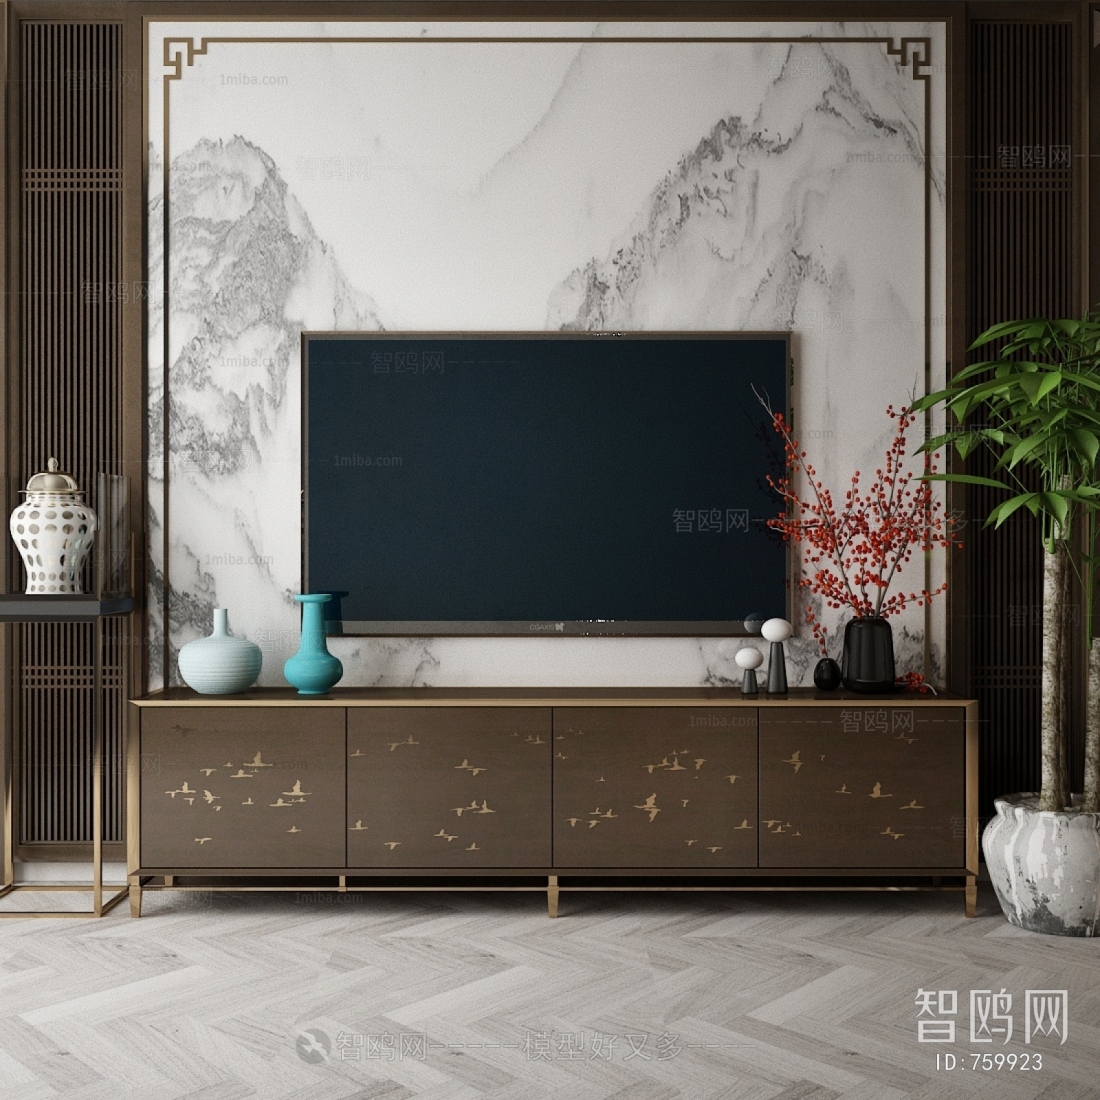 新中式电视柜背景墙